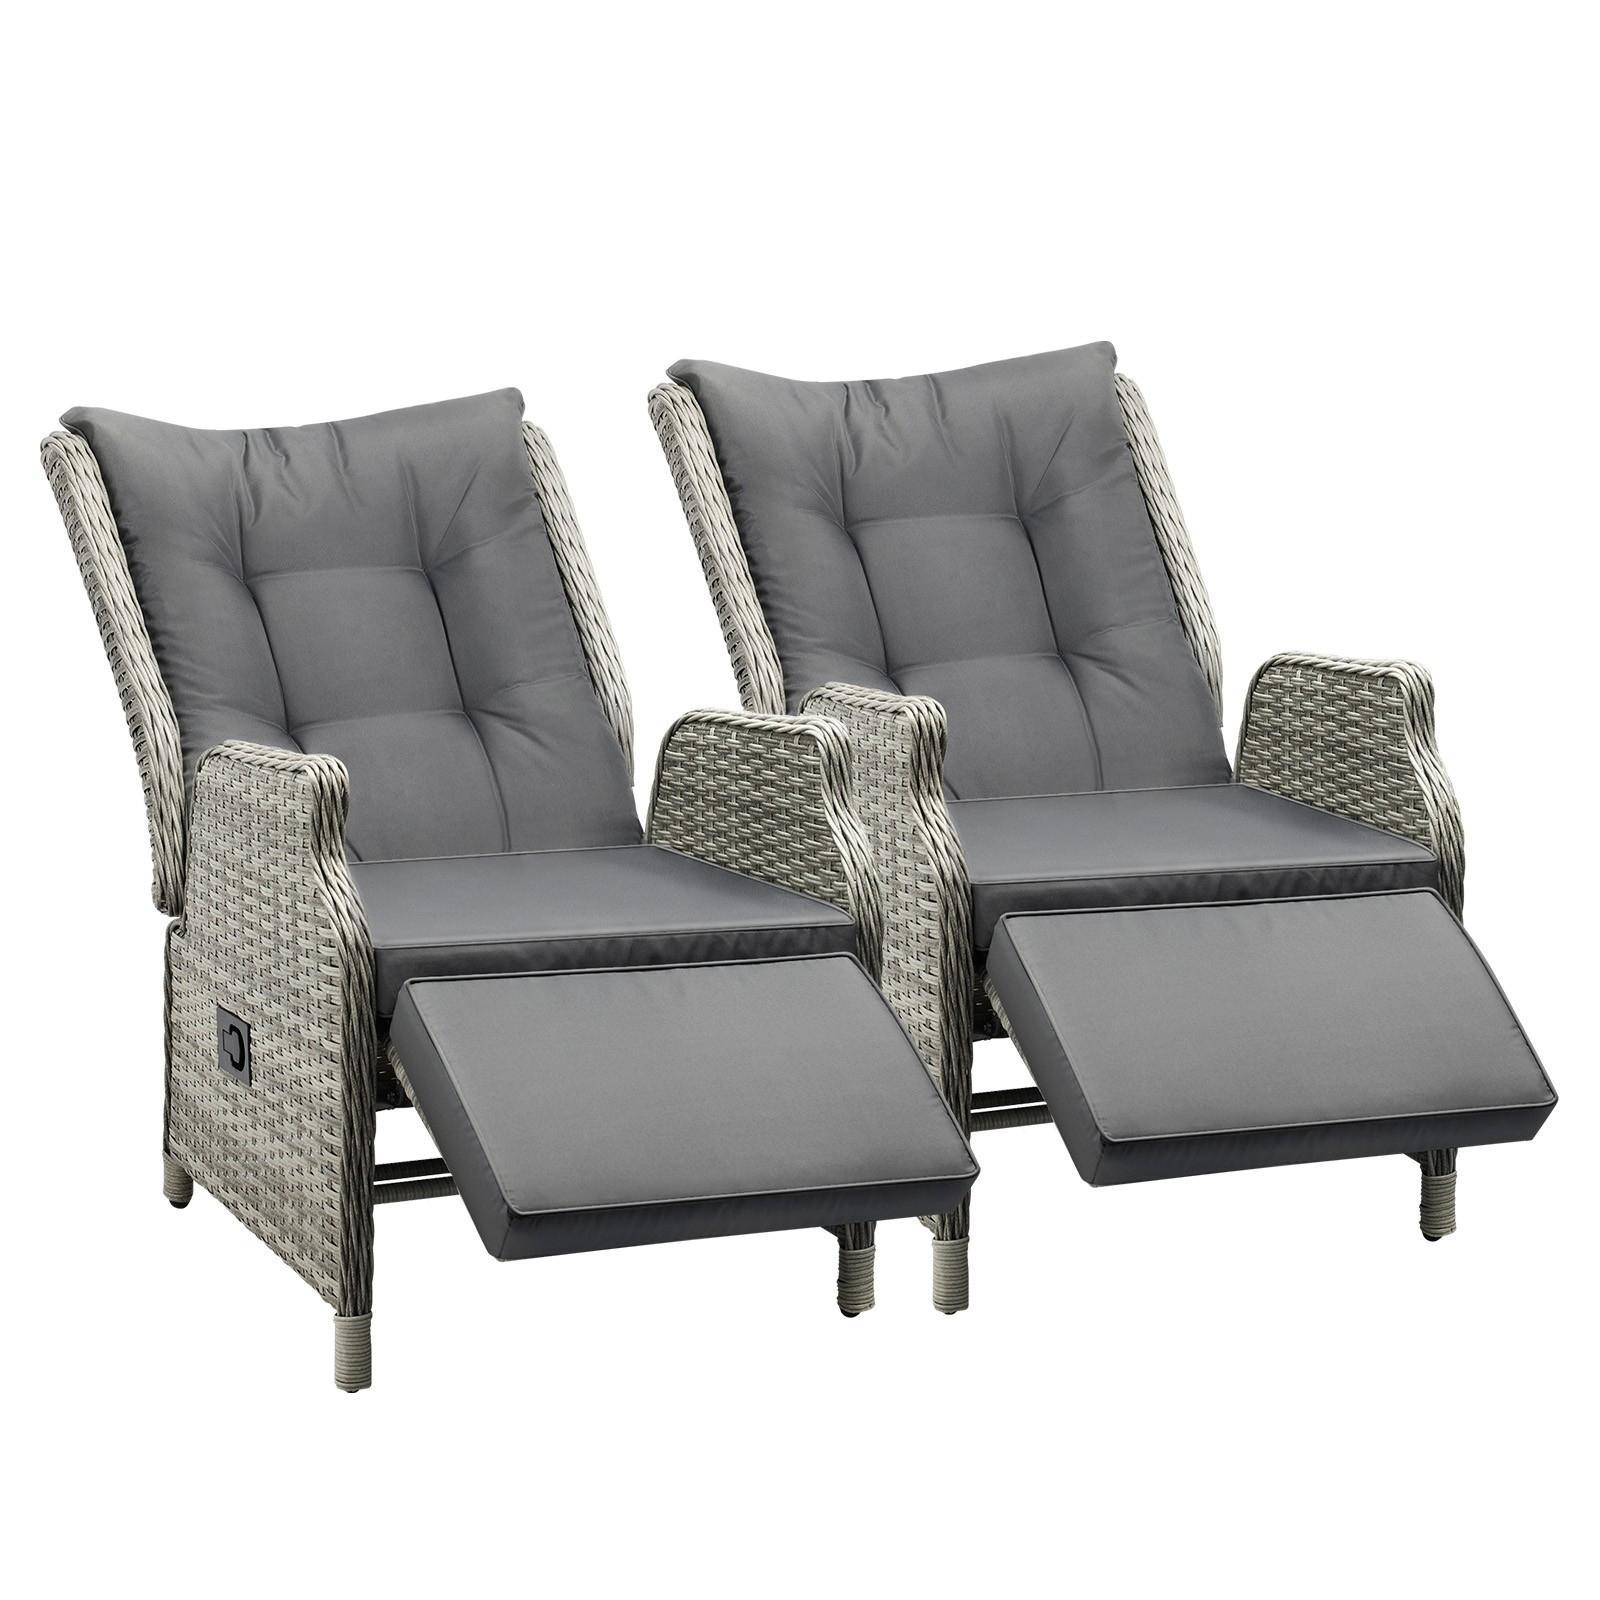 Livsip Recliner Chairs Sun lounger 2 Pieces